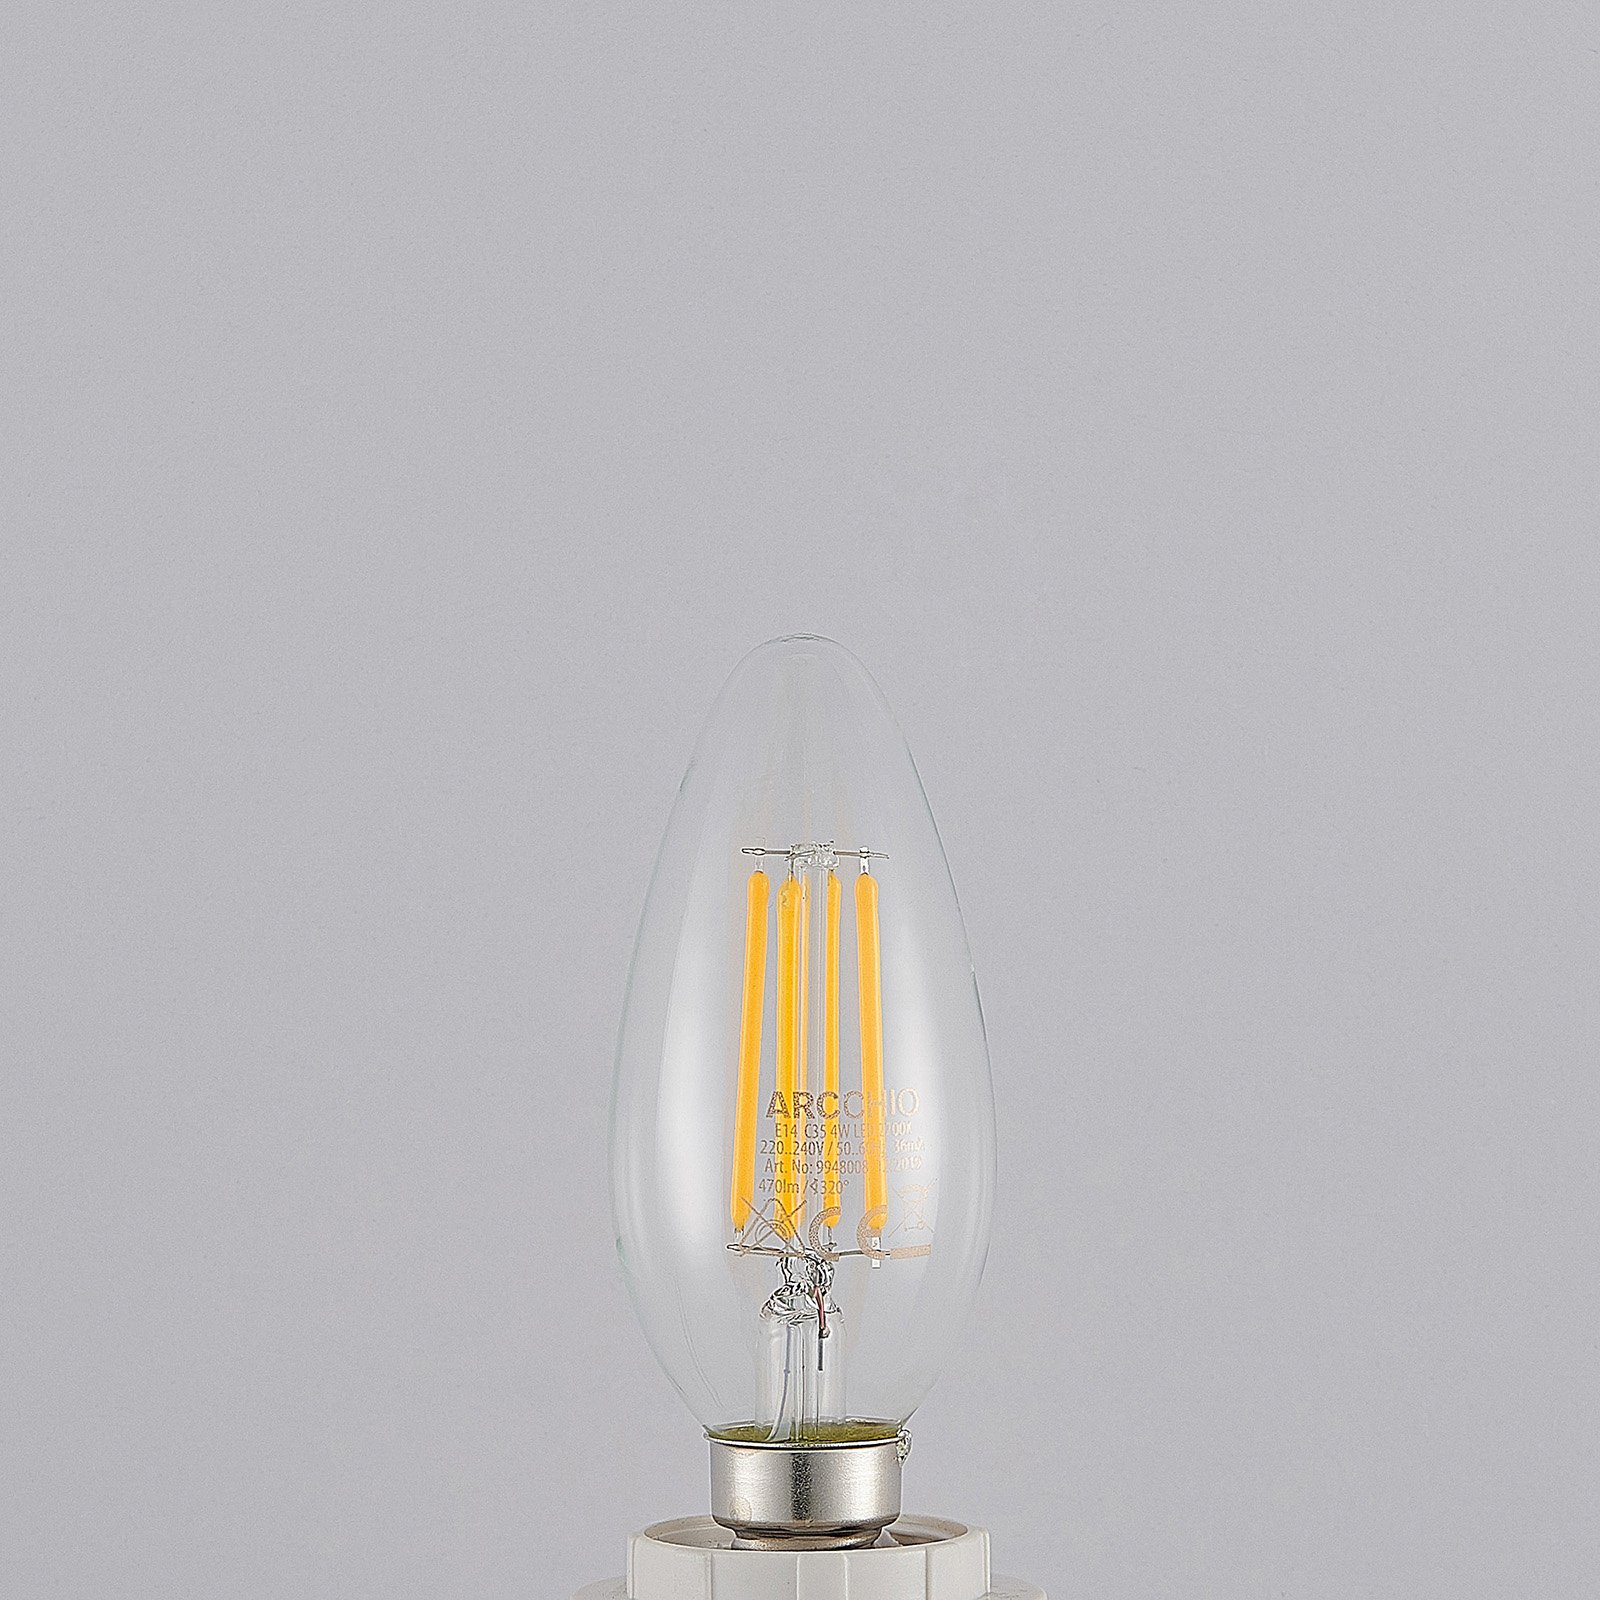 LED-lampa E14 filament 4W 2 700 K 3-stegsdimmer